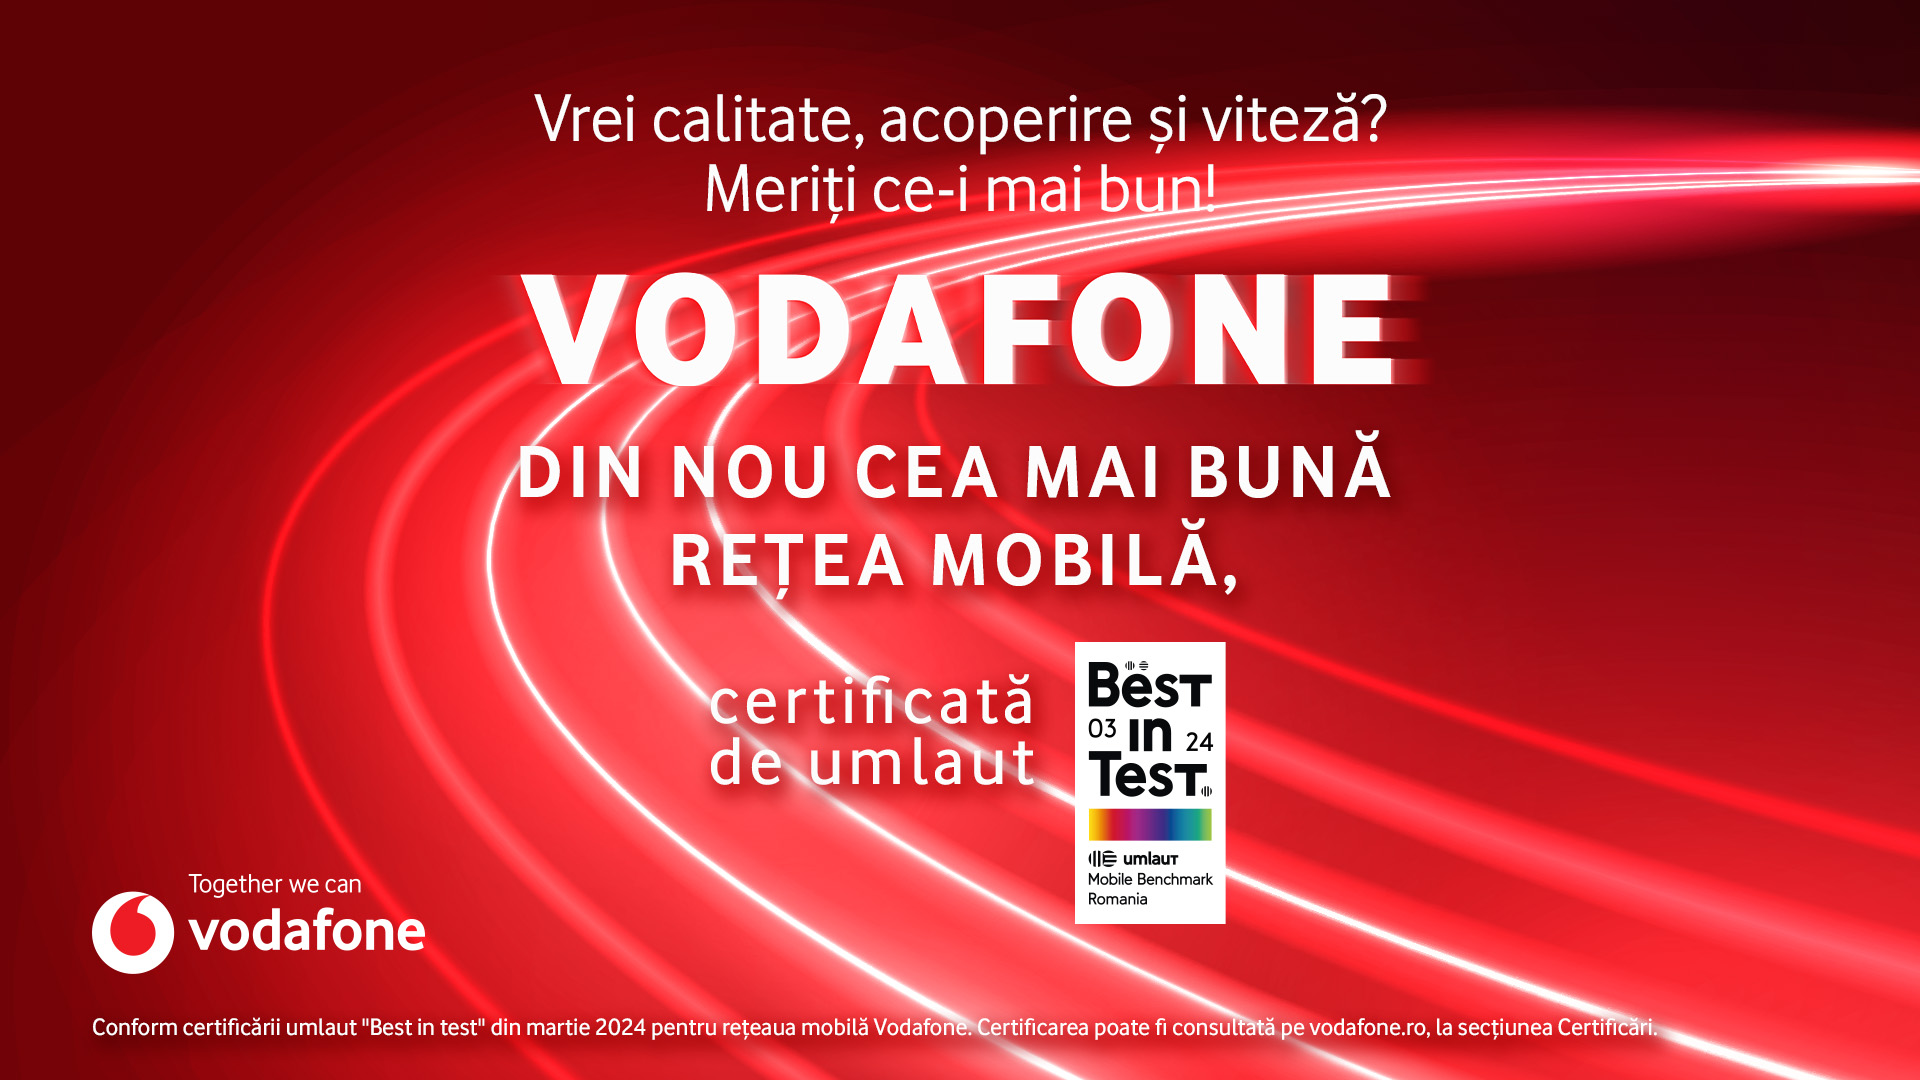 Vodafone România, din nou certificată umlaut „Best in Test” pentru cea mai bună rețea mobilă din țară